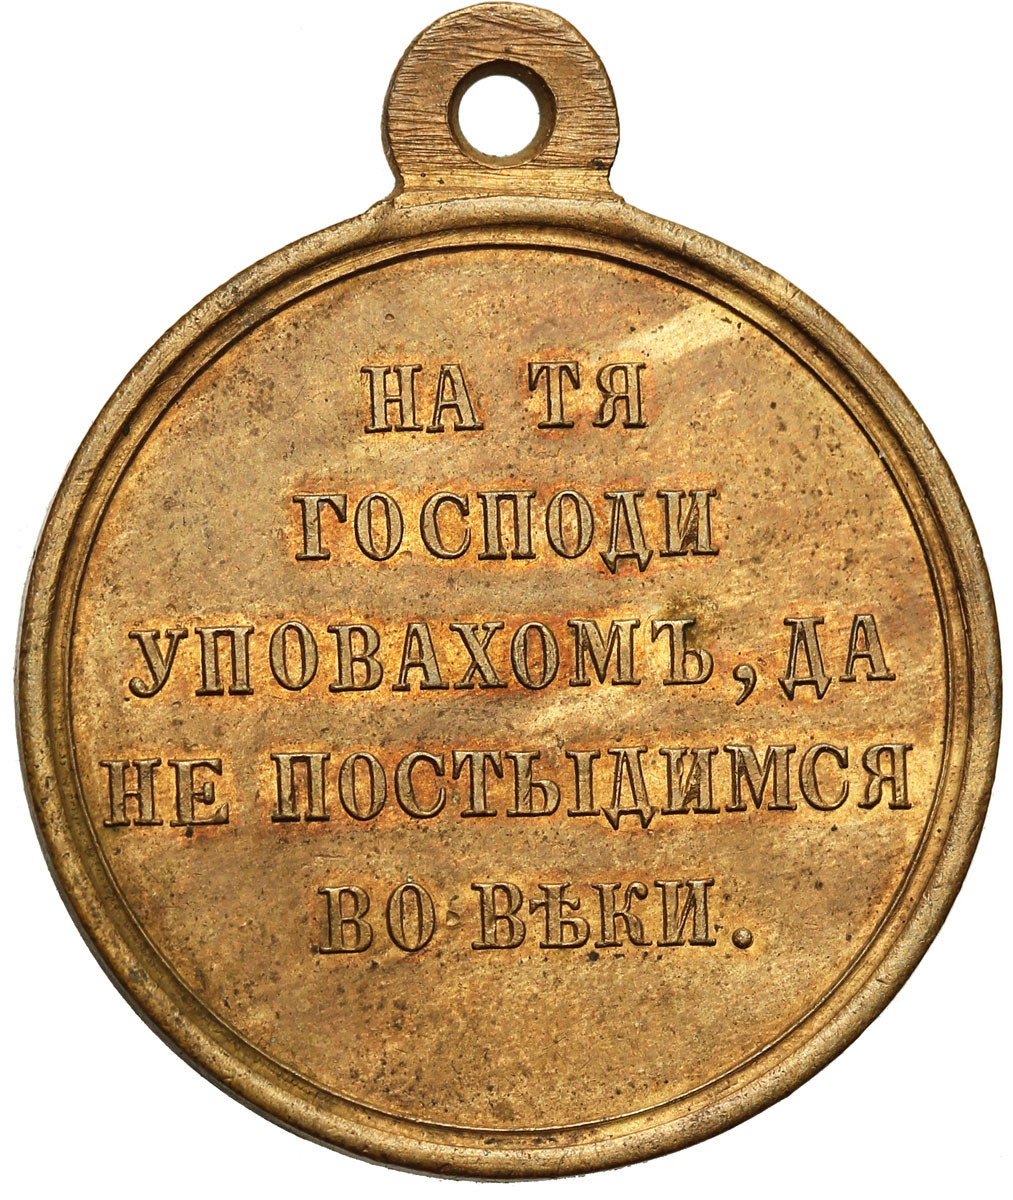 Rosja. Aleksander II. Medal za wojnę krymską 1853-1856, brąz - PIĘKNY